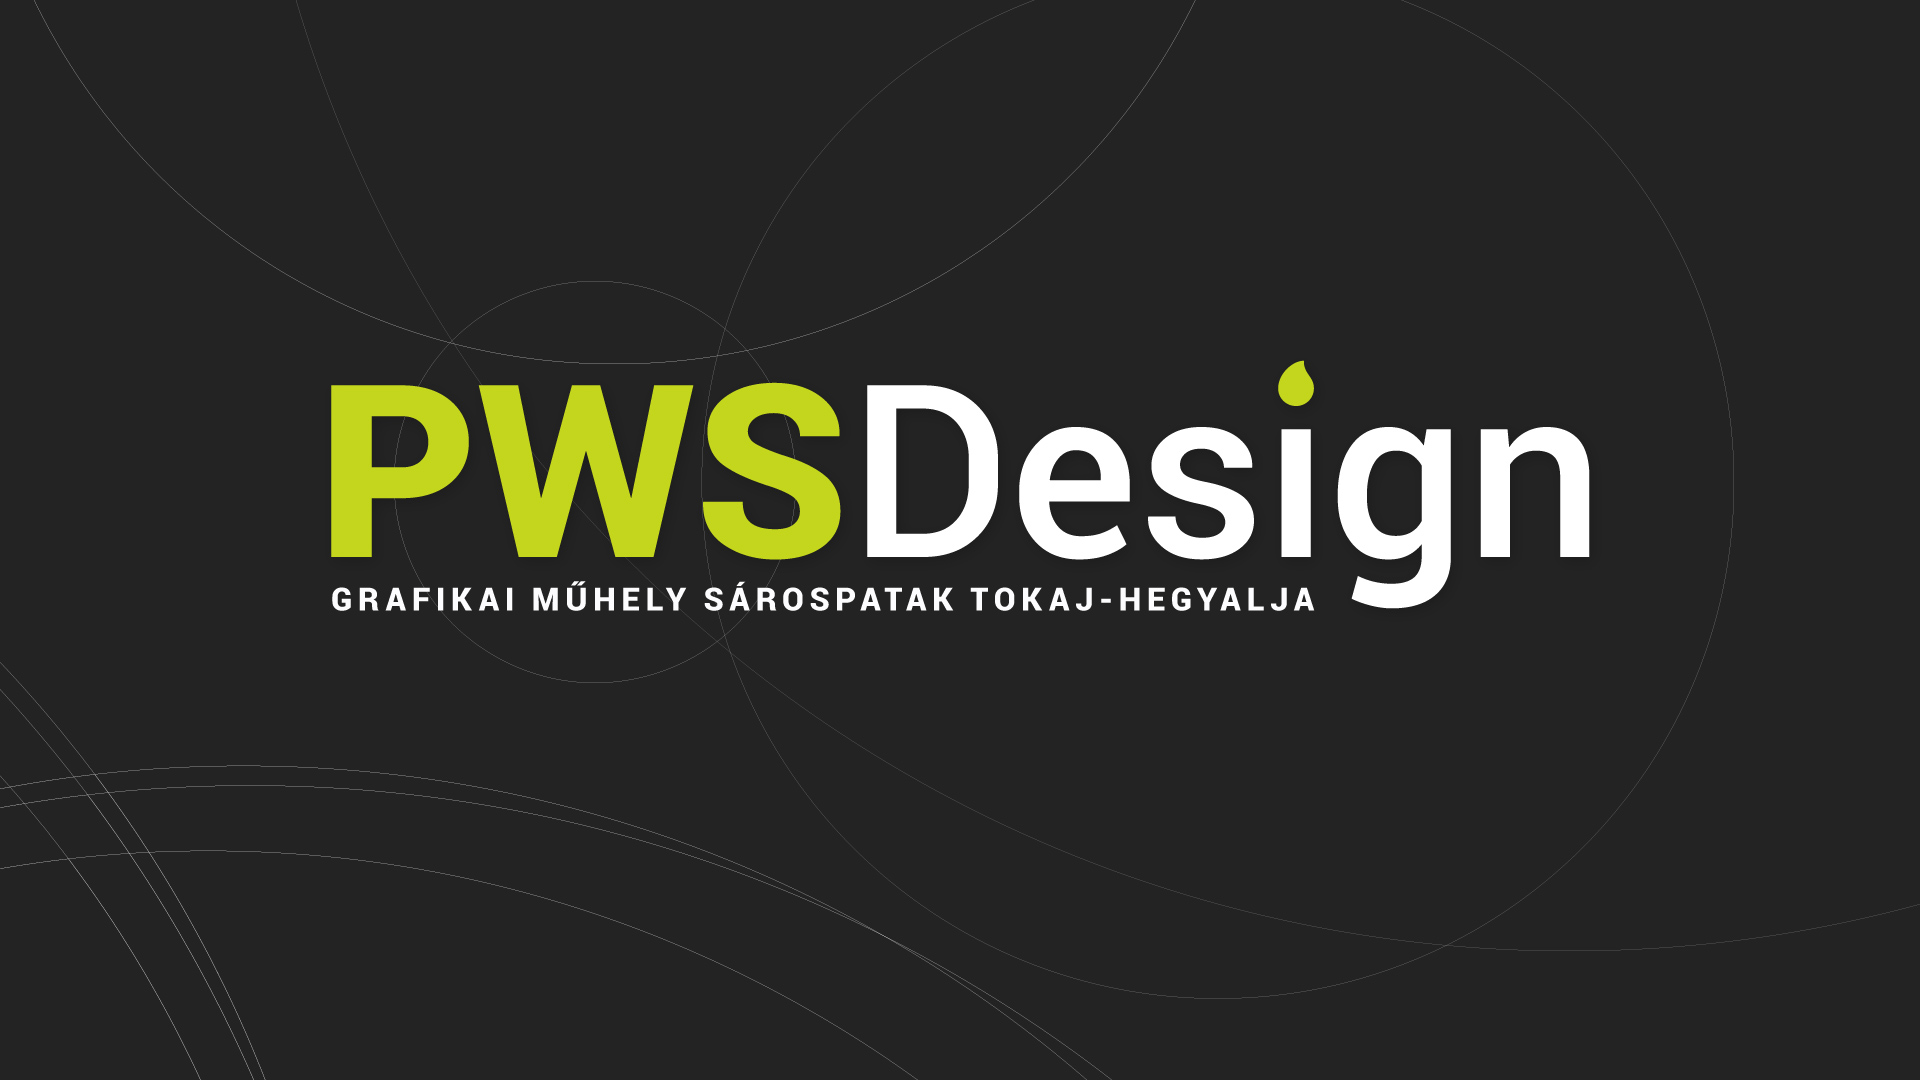 (c) Pwsdesign.com